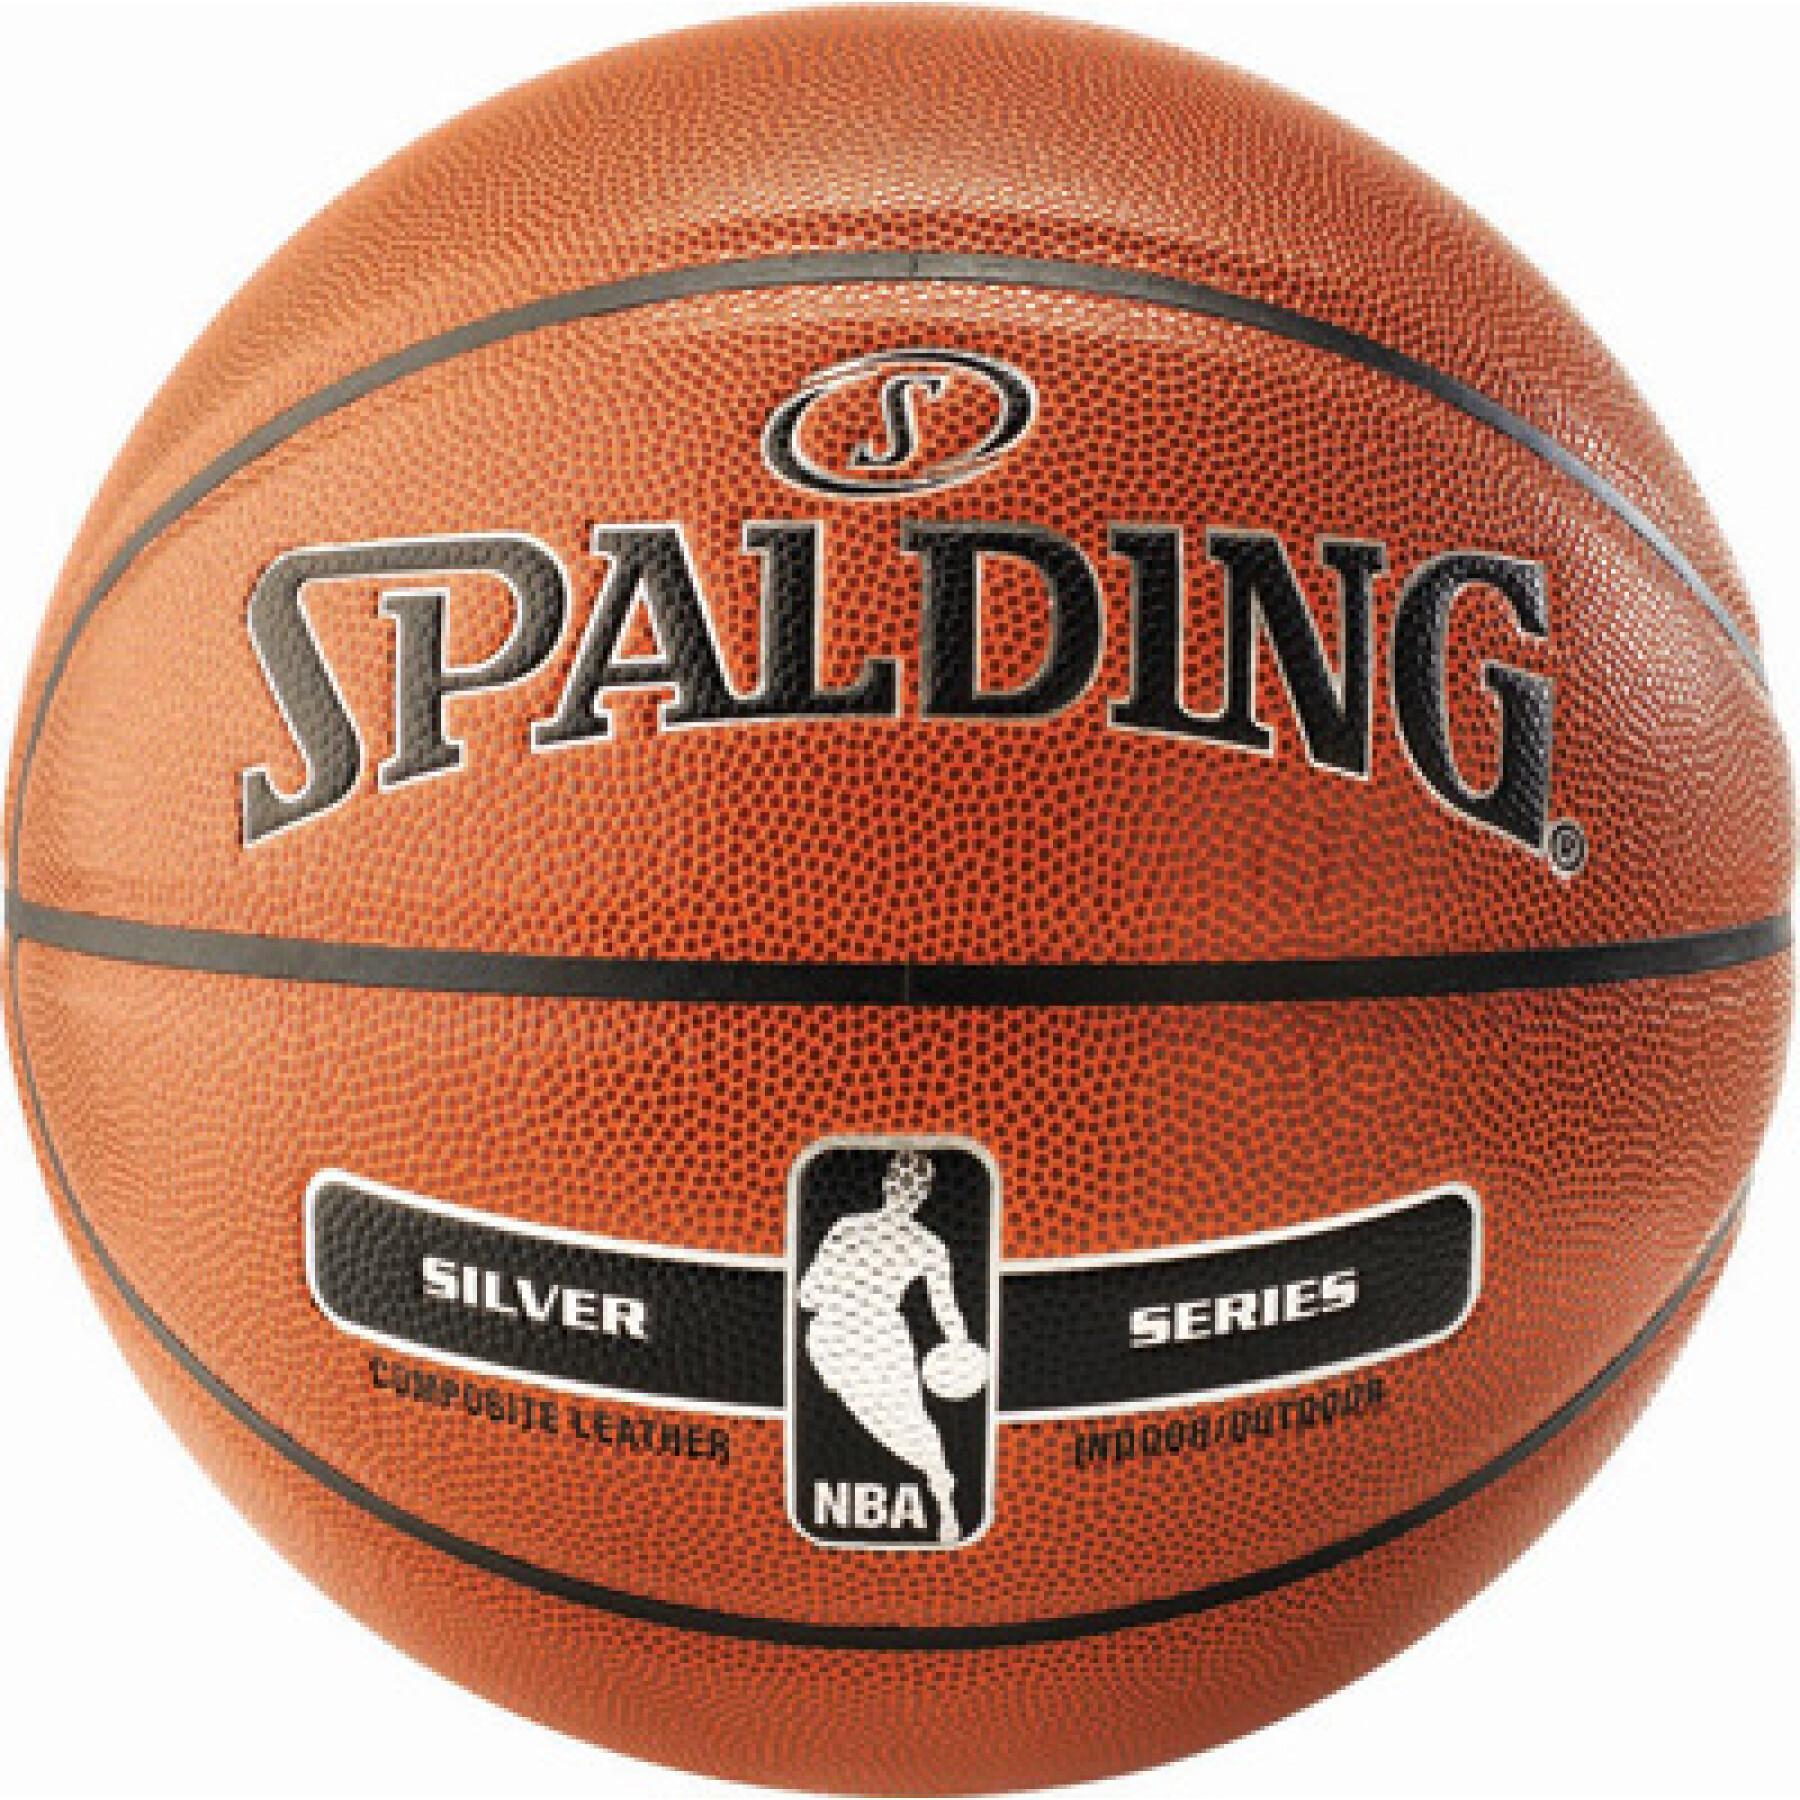 Ballon de basket Spalding Nba Silver indoor/outdoor